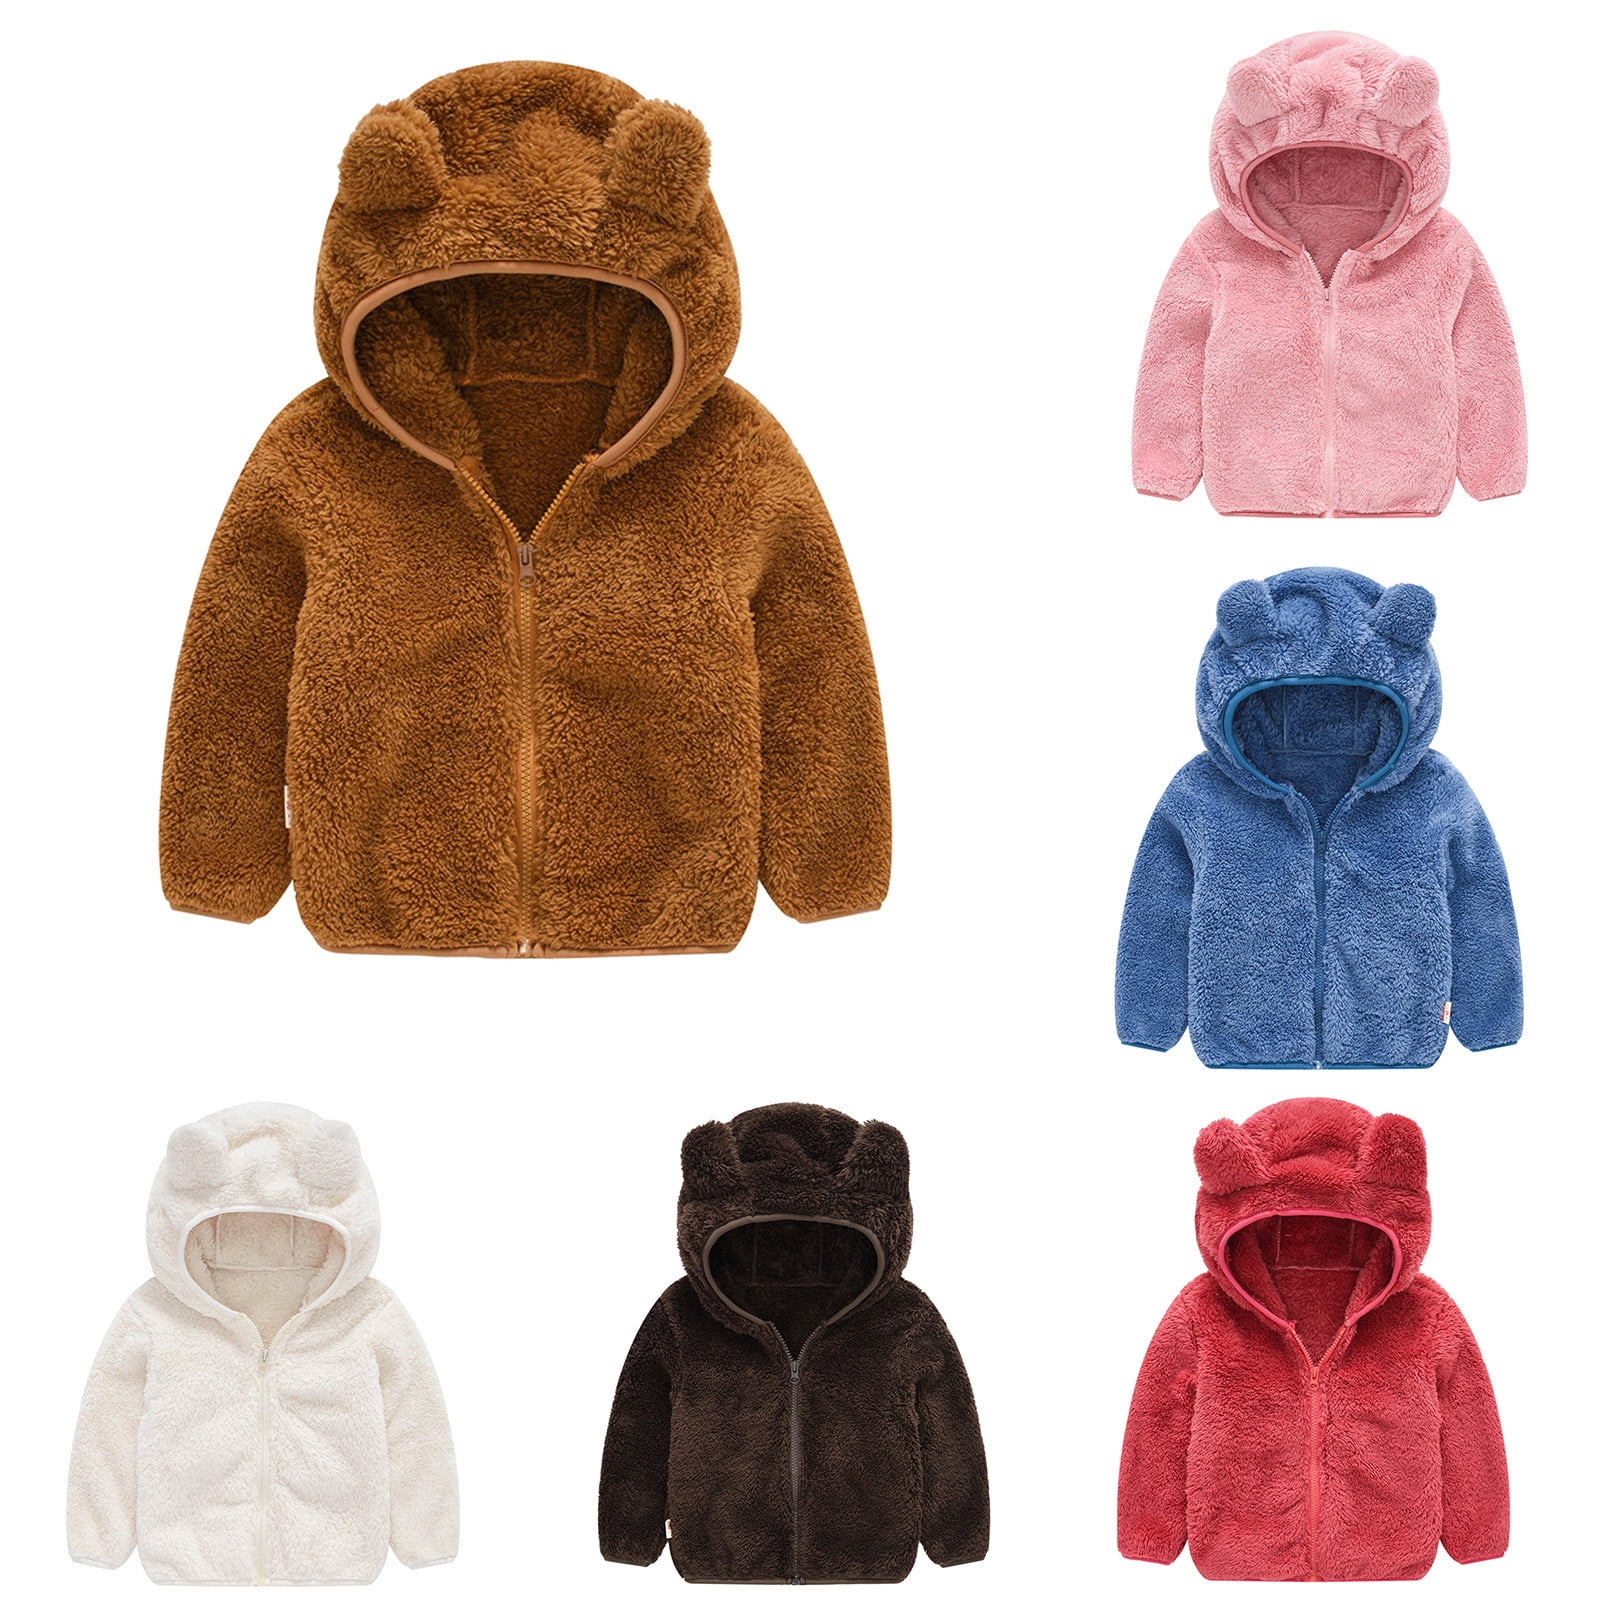 Kids' Winter Warm Coat Toddler Outerwear Boy Hooded Jacket Windbreaker Clothes